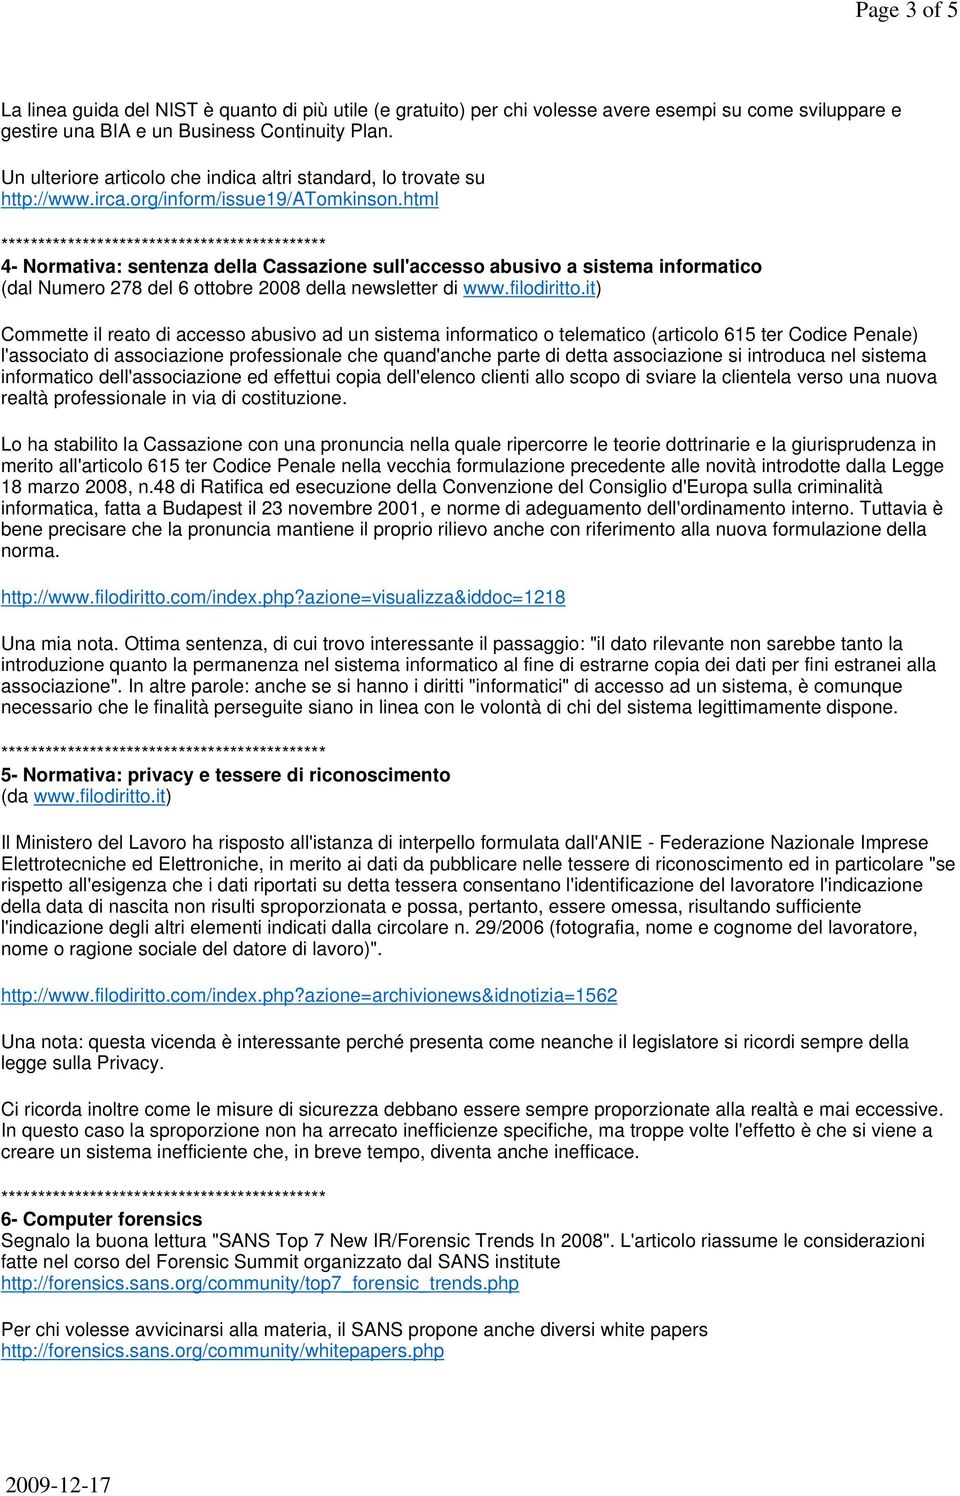 html 4- Normativa: sentenza della Cassazione sull'accesso abusivo a sistema informatico (dal Numero 278 del 6 ottobre 2008 della newsletter di www.filodiritto.